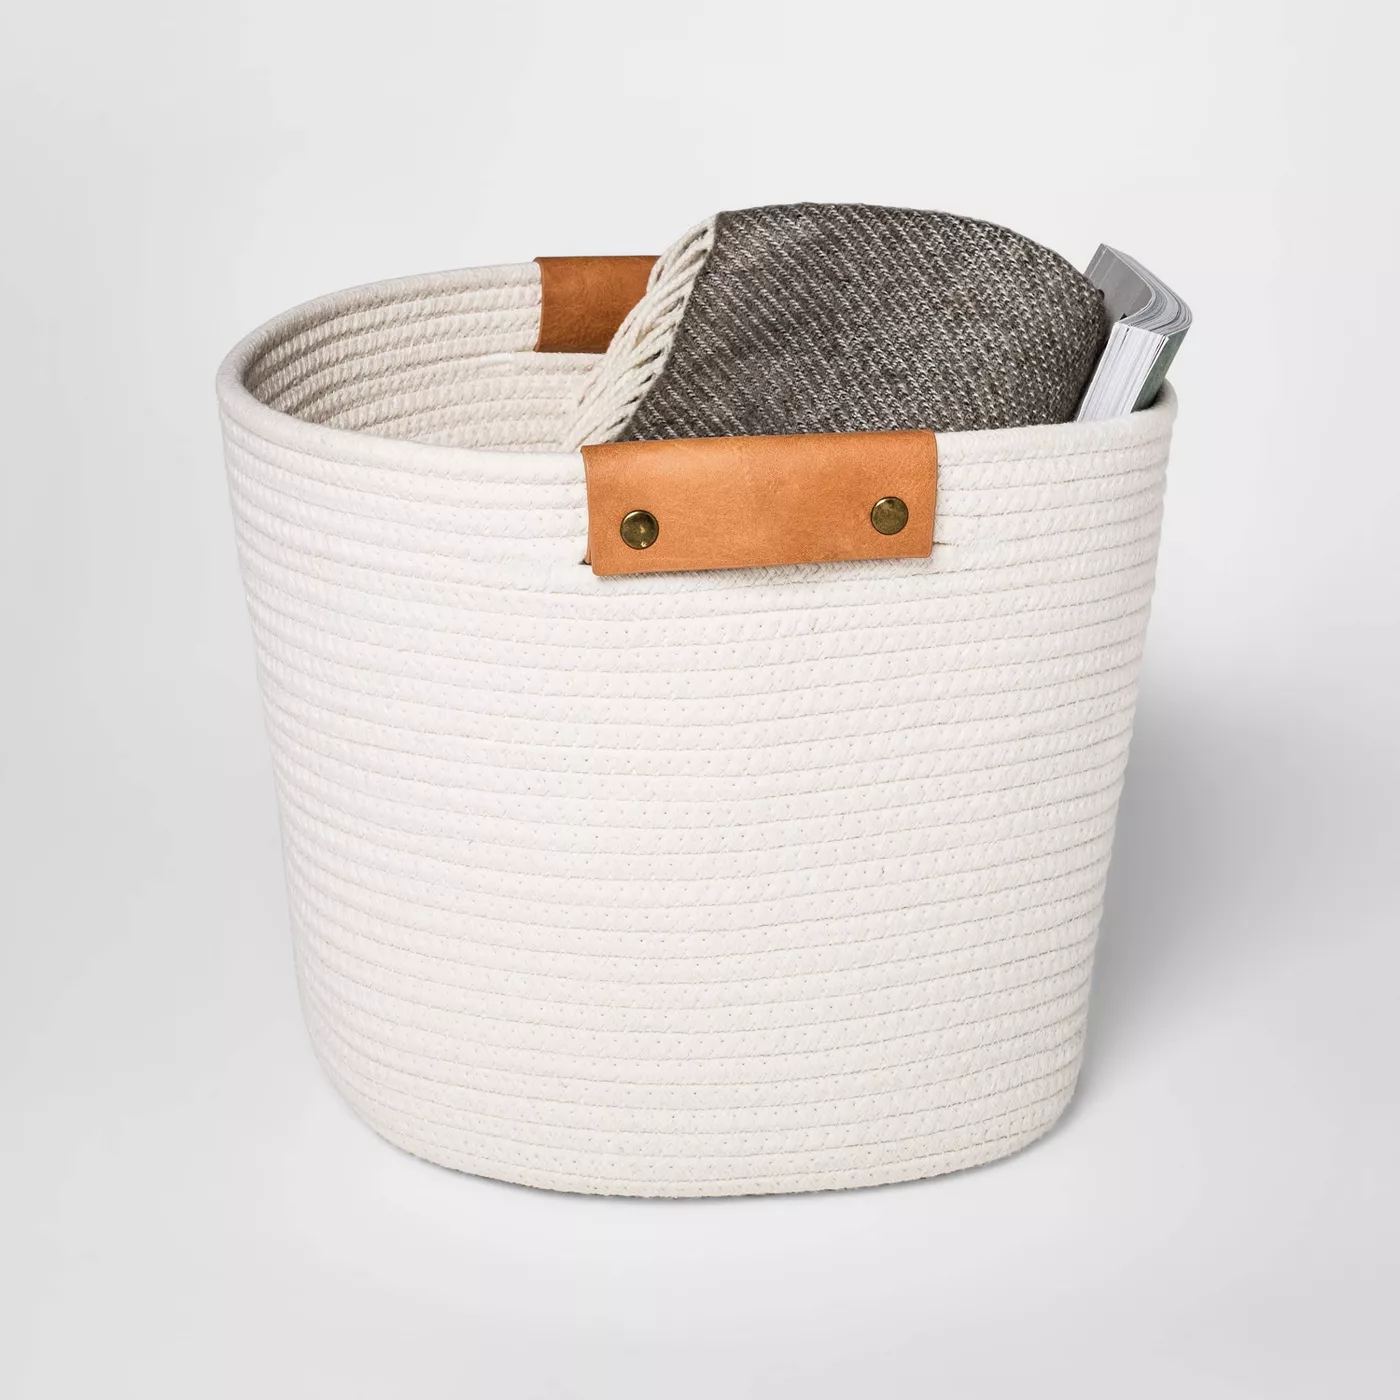 Tapered Decorative Storage Basket